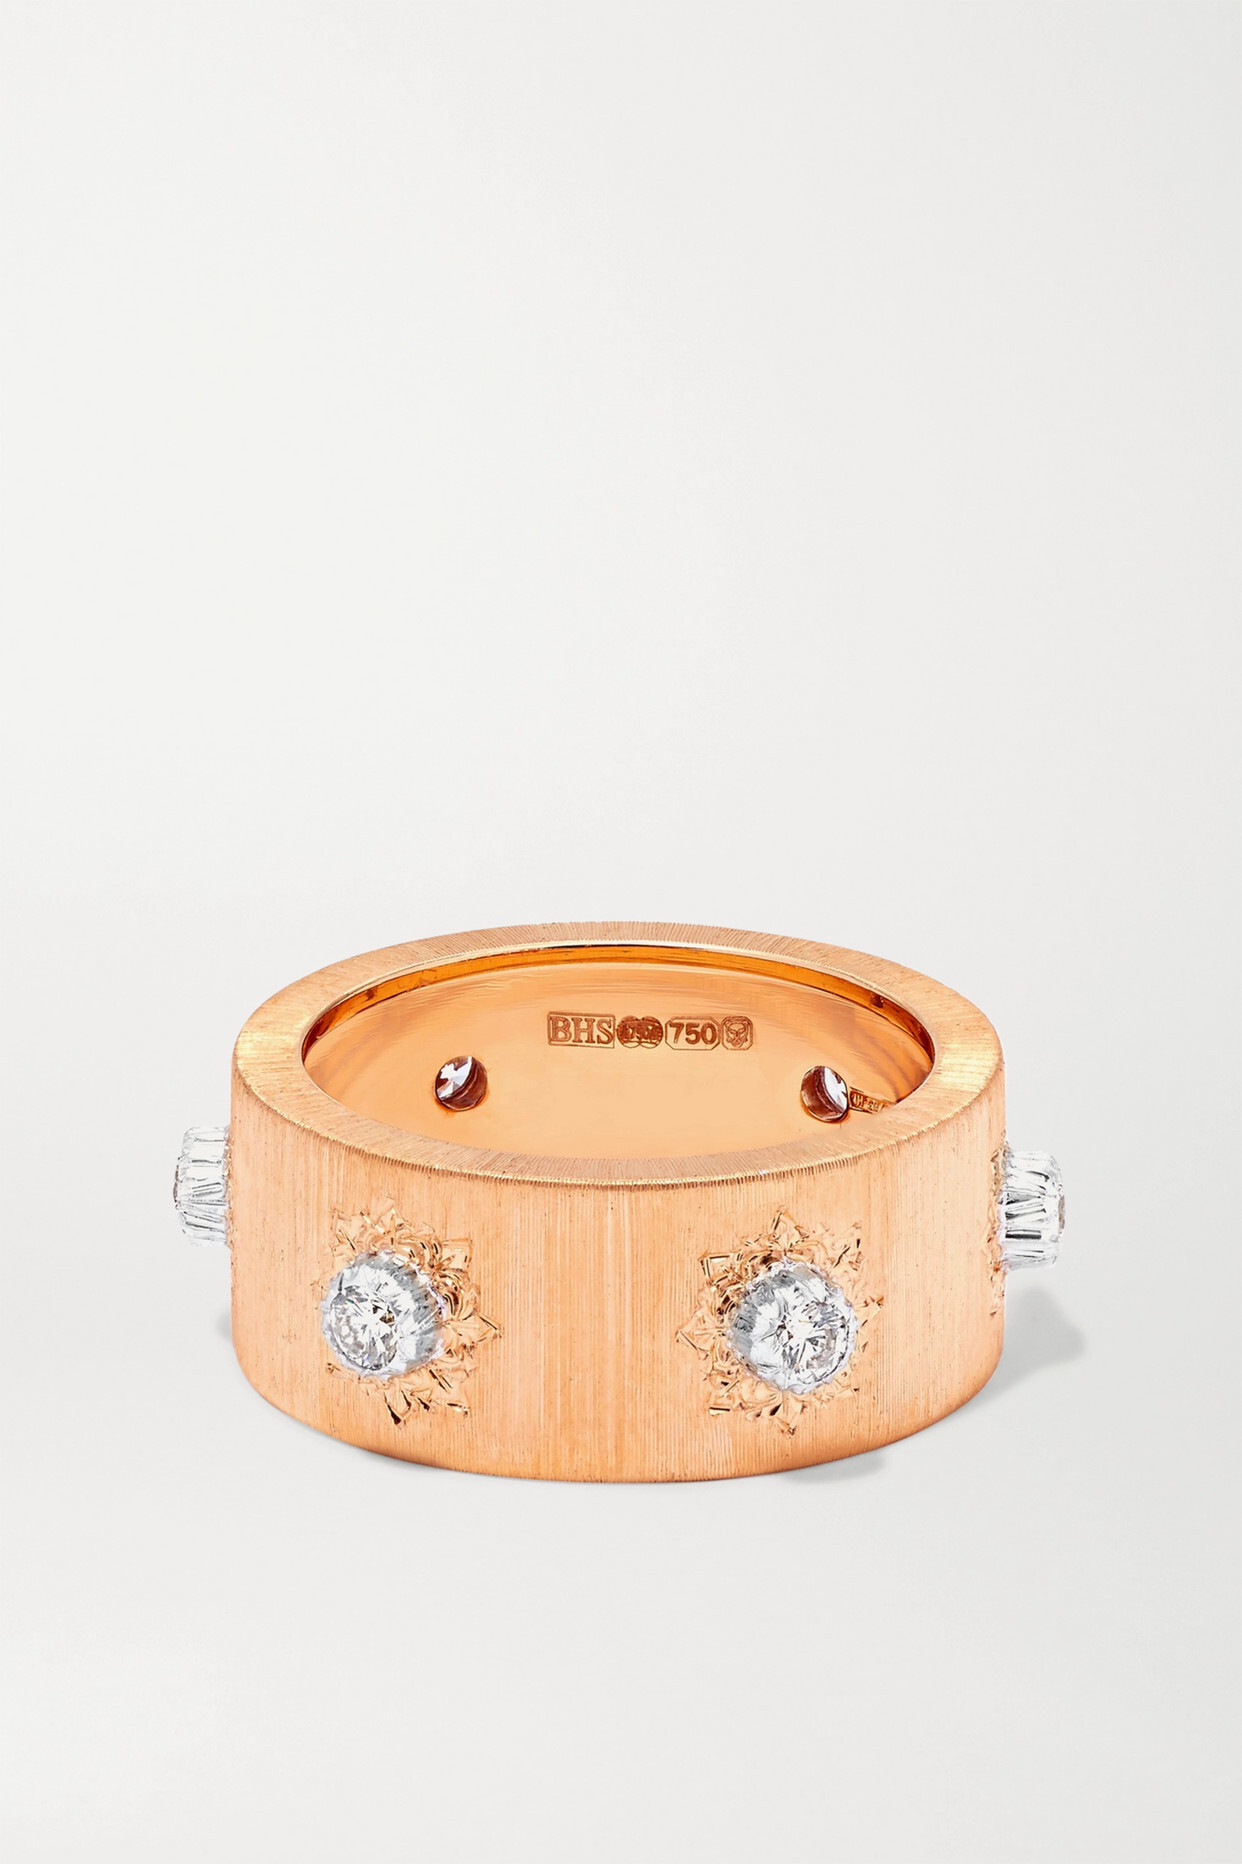 Buccellati - Macri 18-karat Pink And White Gold Diamond Ring - Rose gold